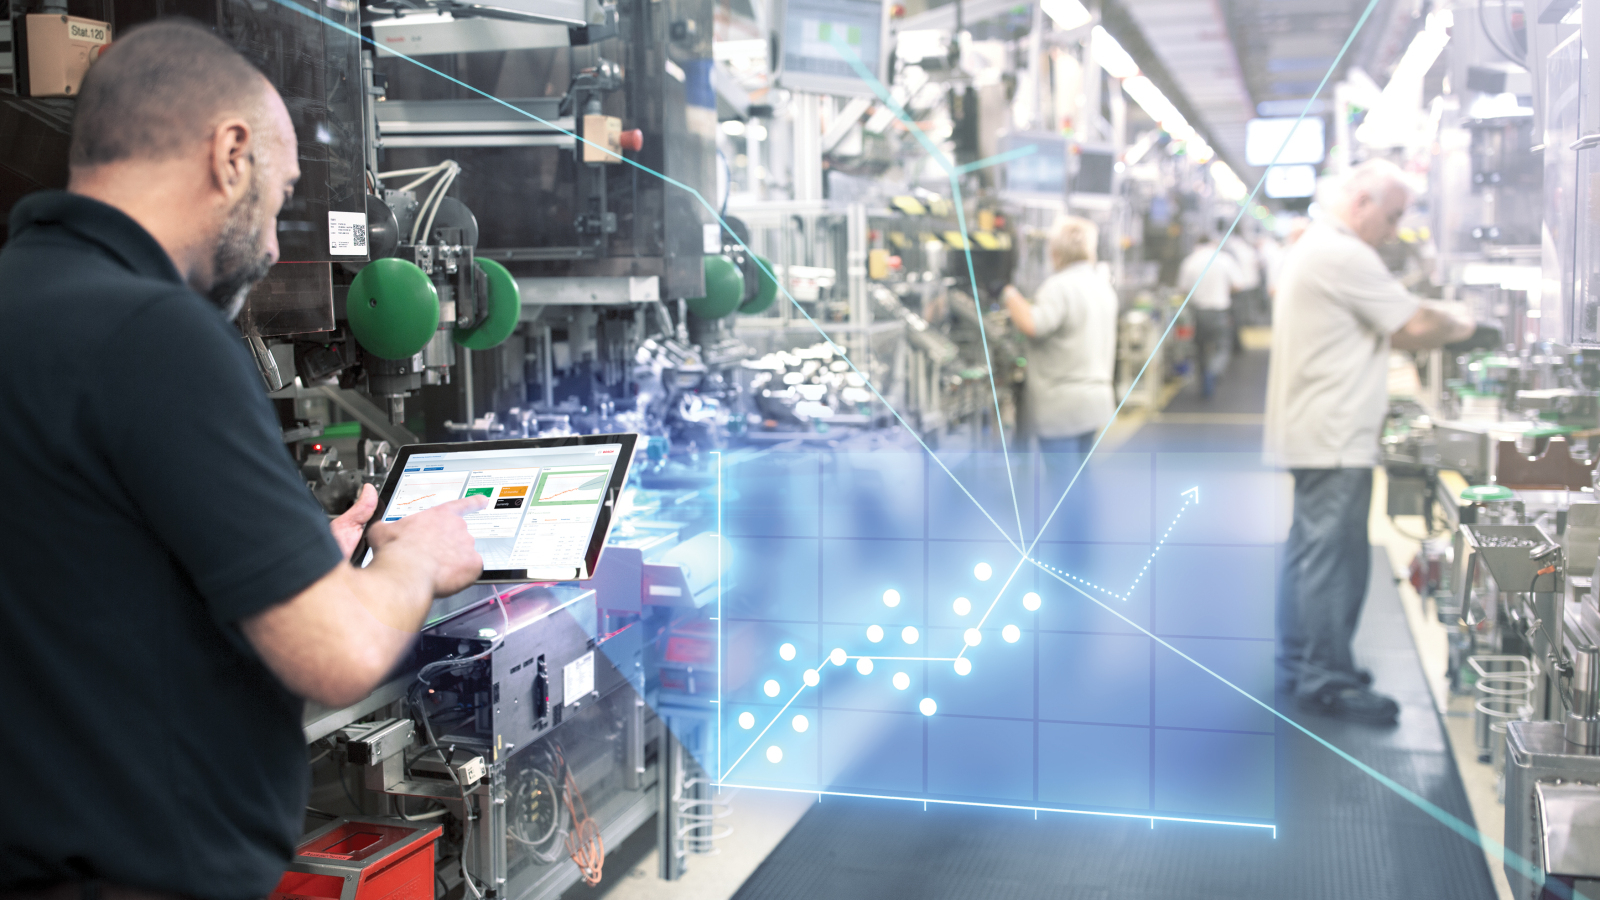 Industrietechnik bietet für Bosch enormes Wachstumspotential. 